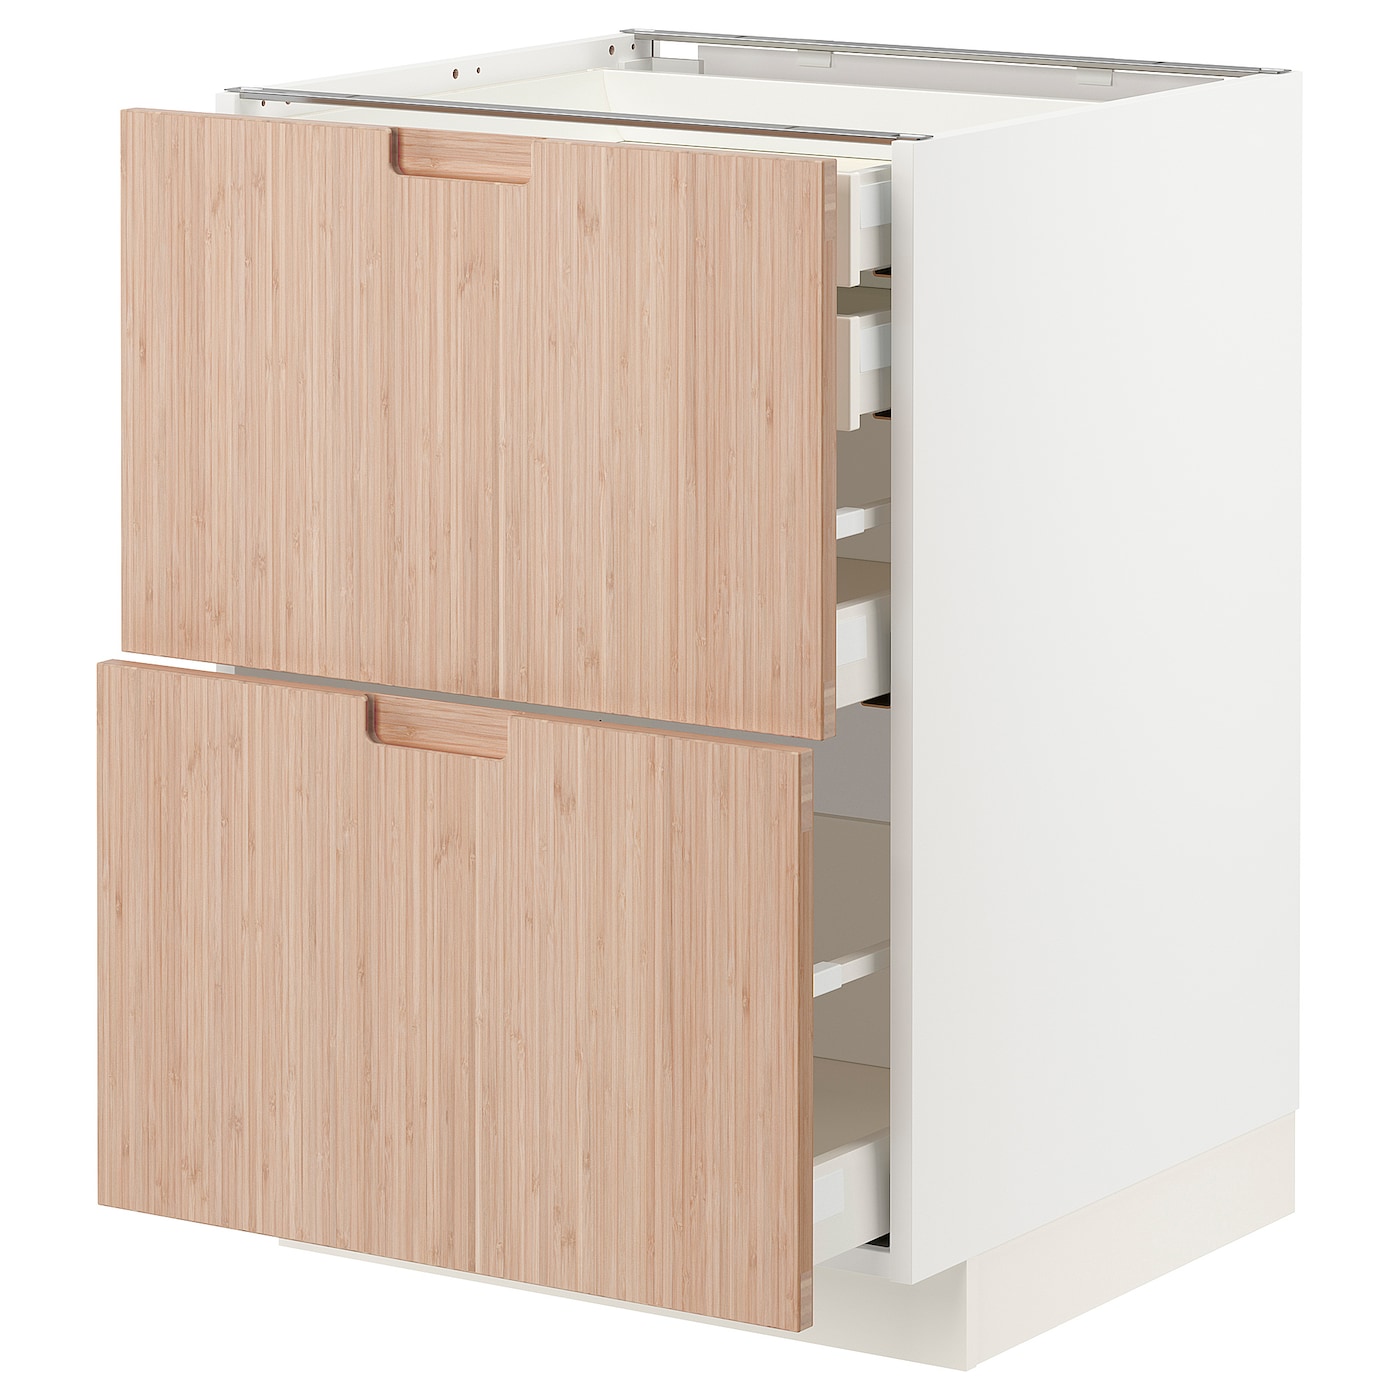 Напольный шкаф  - IKEA METOD MAXIMERA, 88x61,6x60см, белый/светло-коричневый, МЕТОД МАКСИМЕРА ИКЕА